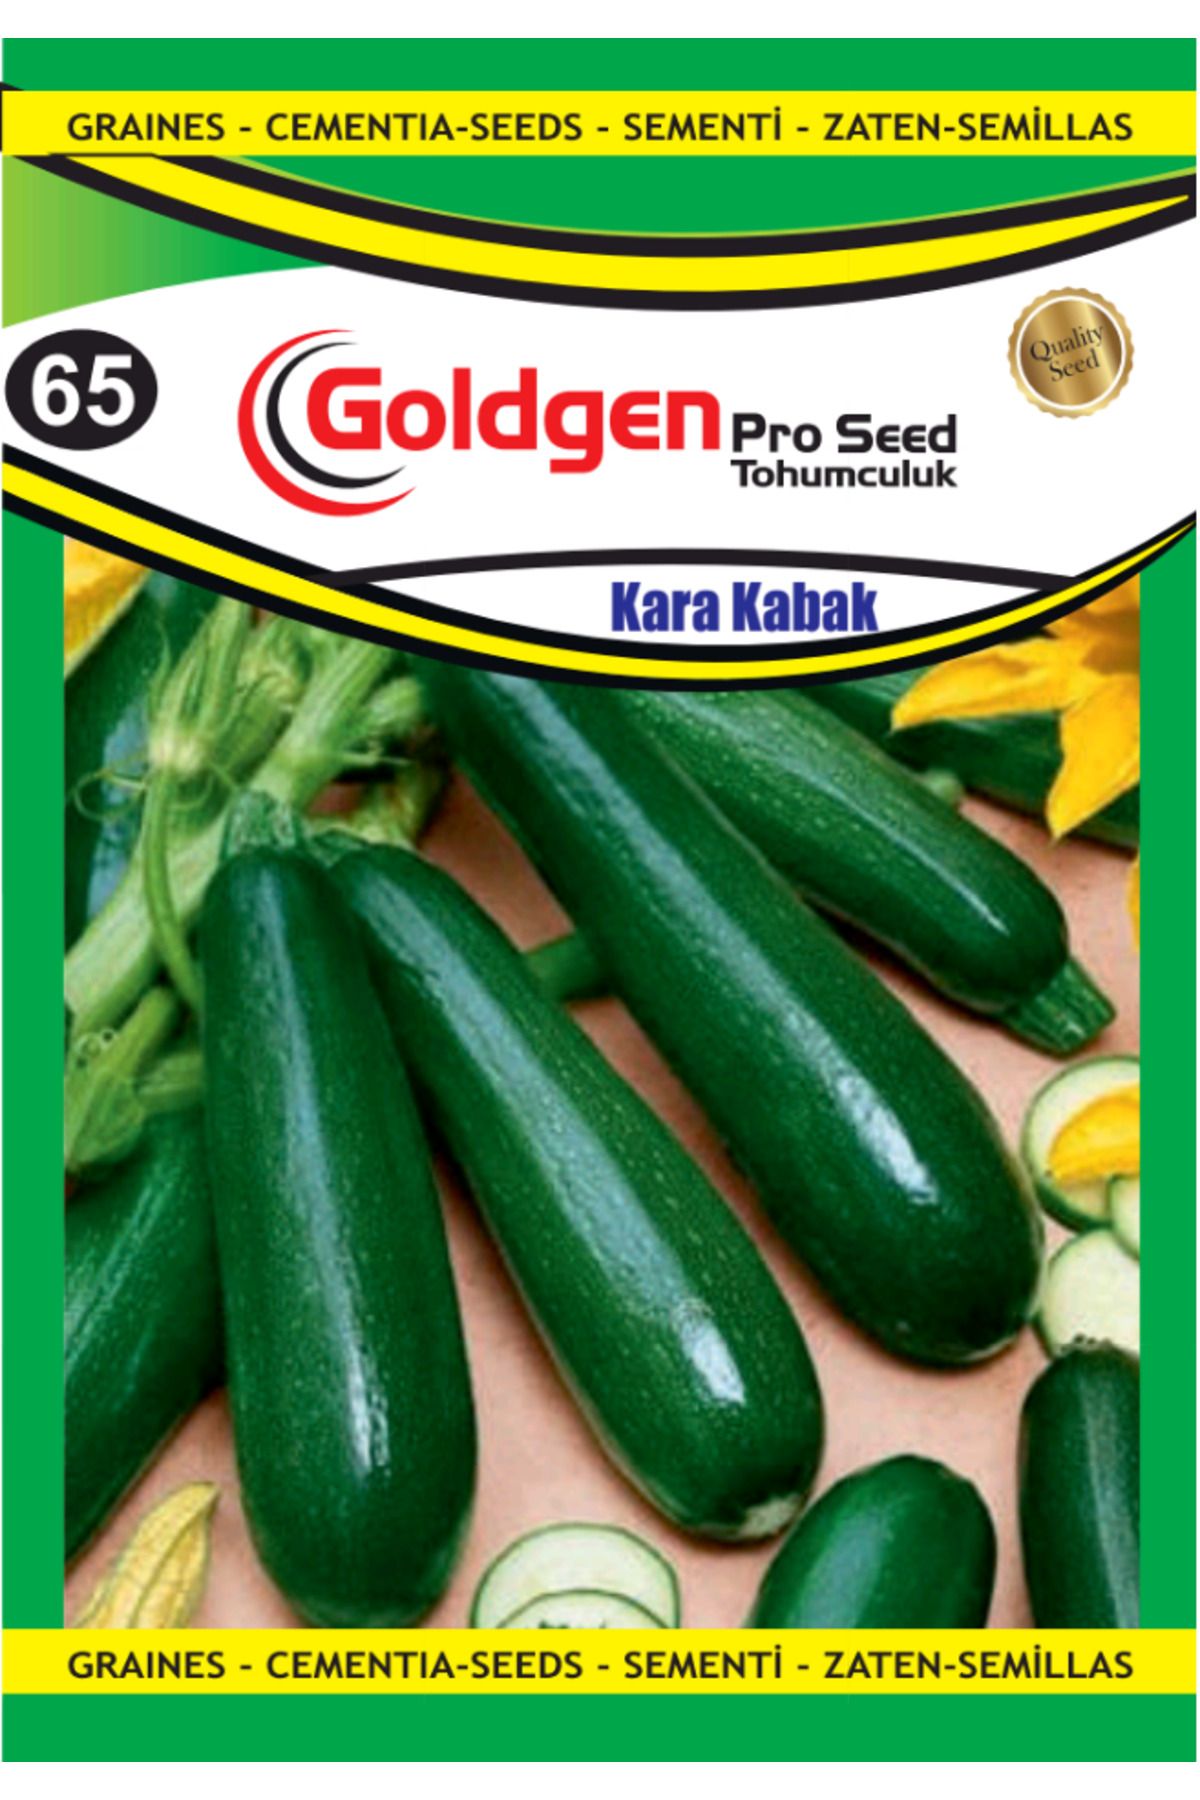 Goldgen Pro Seed Kara Kabak Tohumu